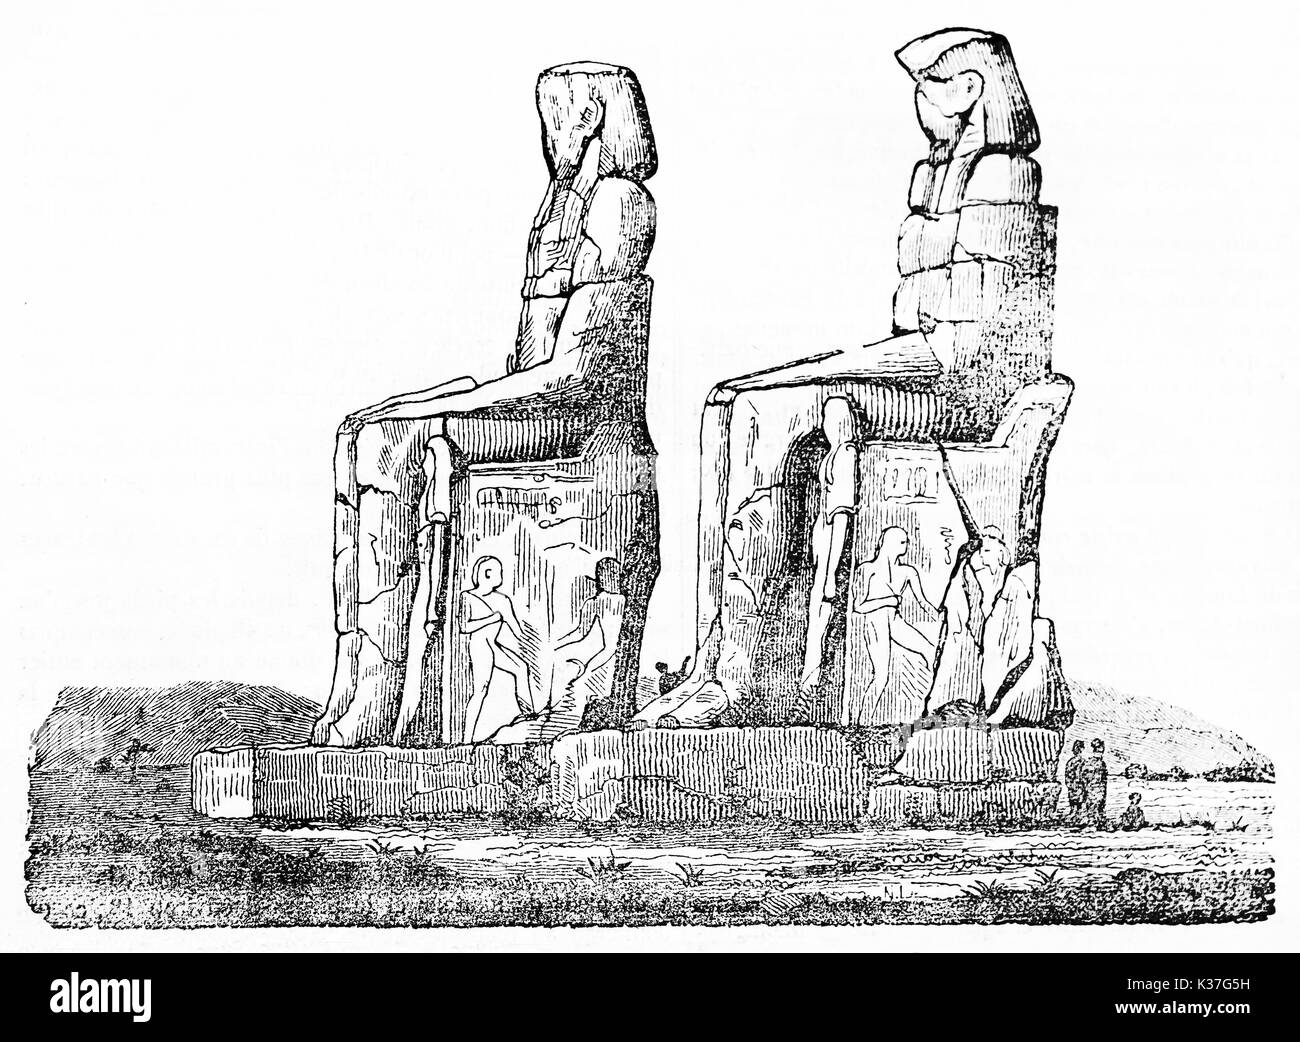 Colosses de Memnon, Egypte. Image isolée avec une petite partie de la masse. Vieille Illustration d'auteur non identifié, publié le Magasin Pittoresque, Paris, 1834 Banque D'Images